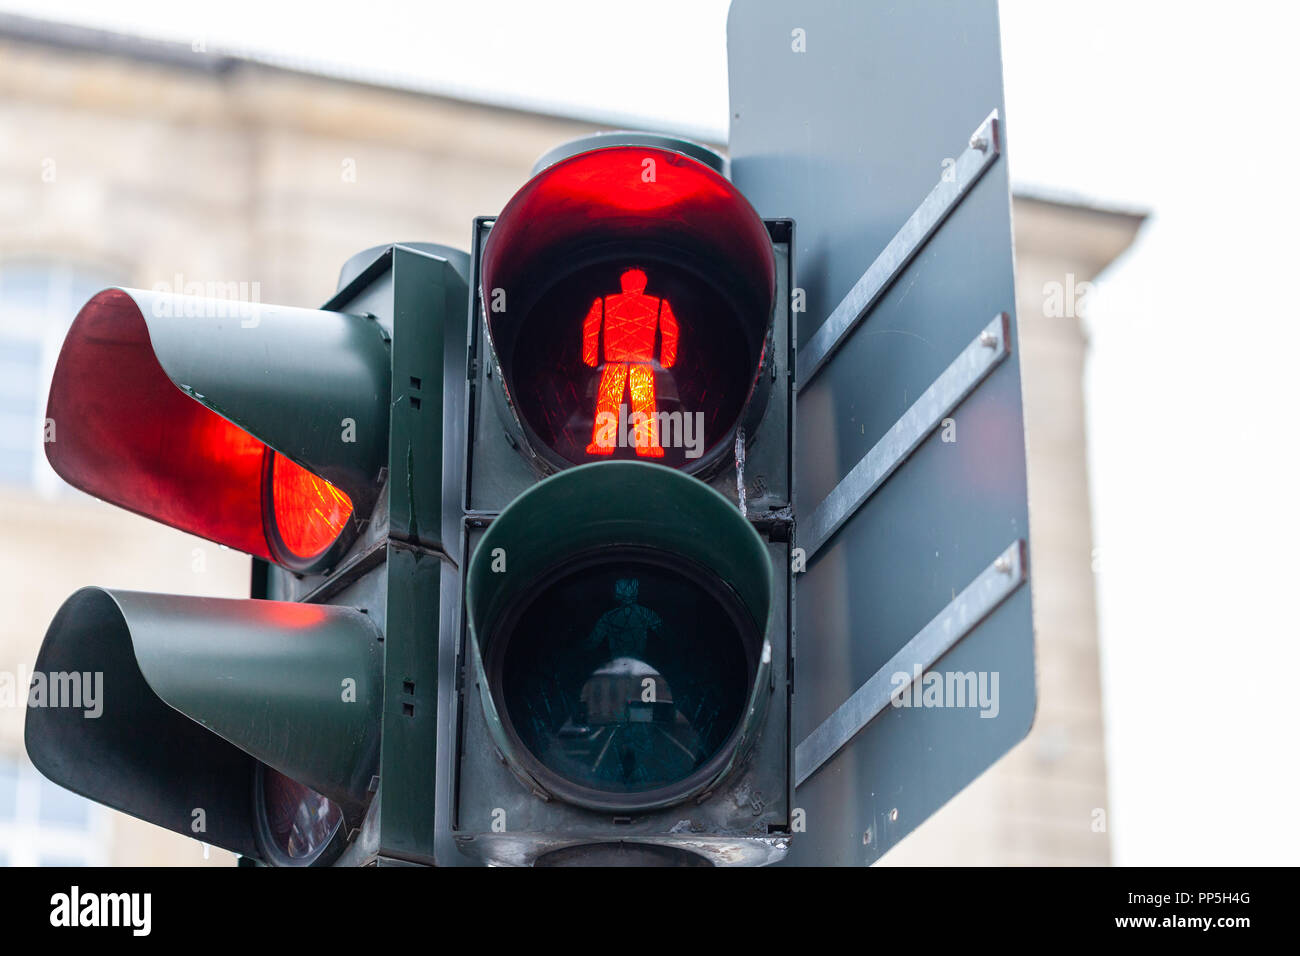 Tedesco segno del traffico su strada di Norimberga, Germania Foto Stock